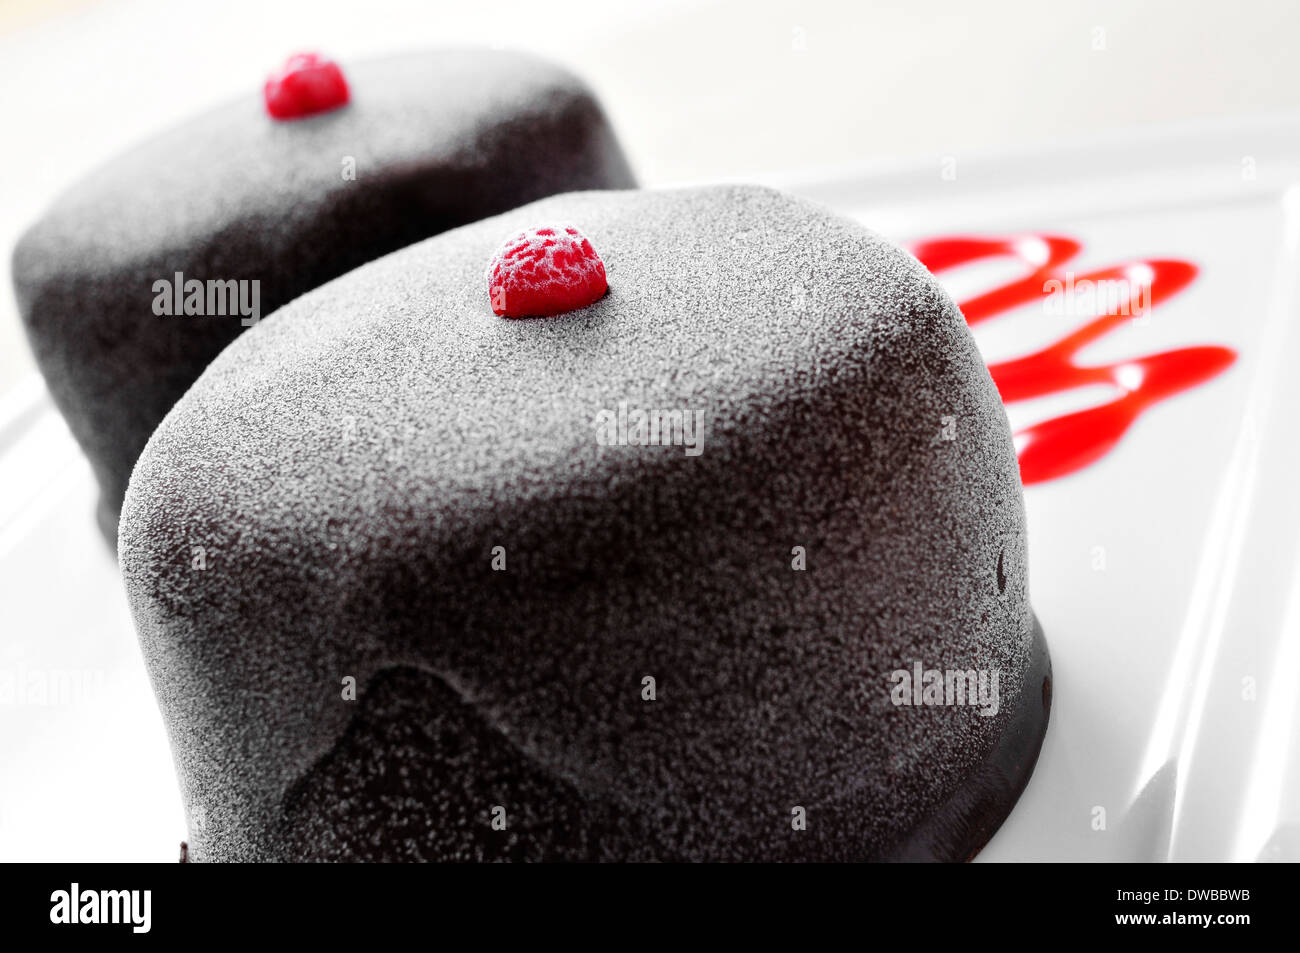 Nahaufnahme von einem gefrorenen Schokoladendessert in einem Teller mit Erdbeer-Sirup Stockfoto